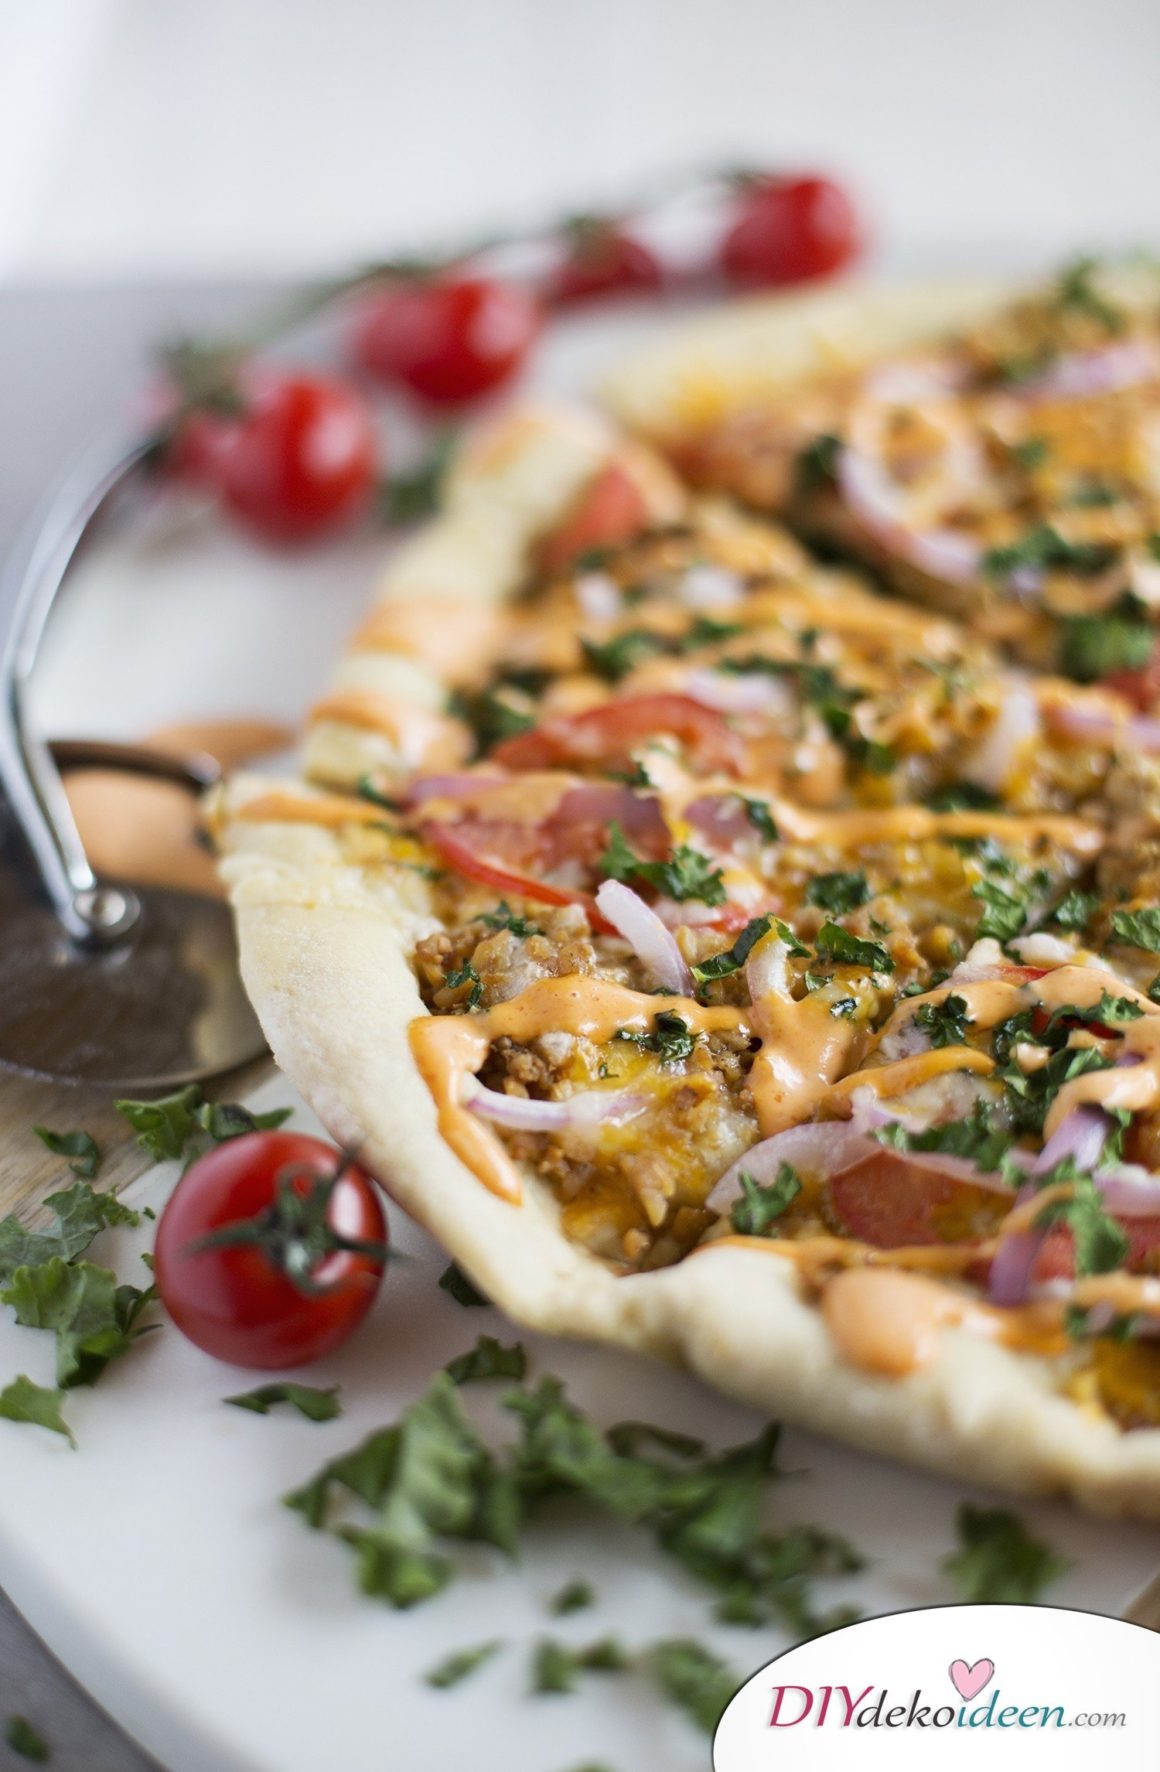 Diese Pizza beweist, dass die vegetarische Ernährung himmlisch ist